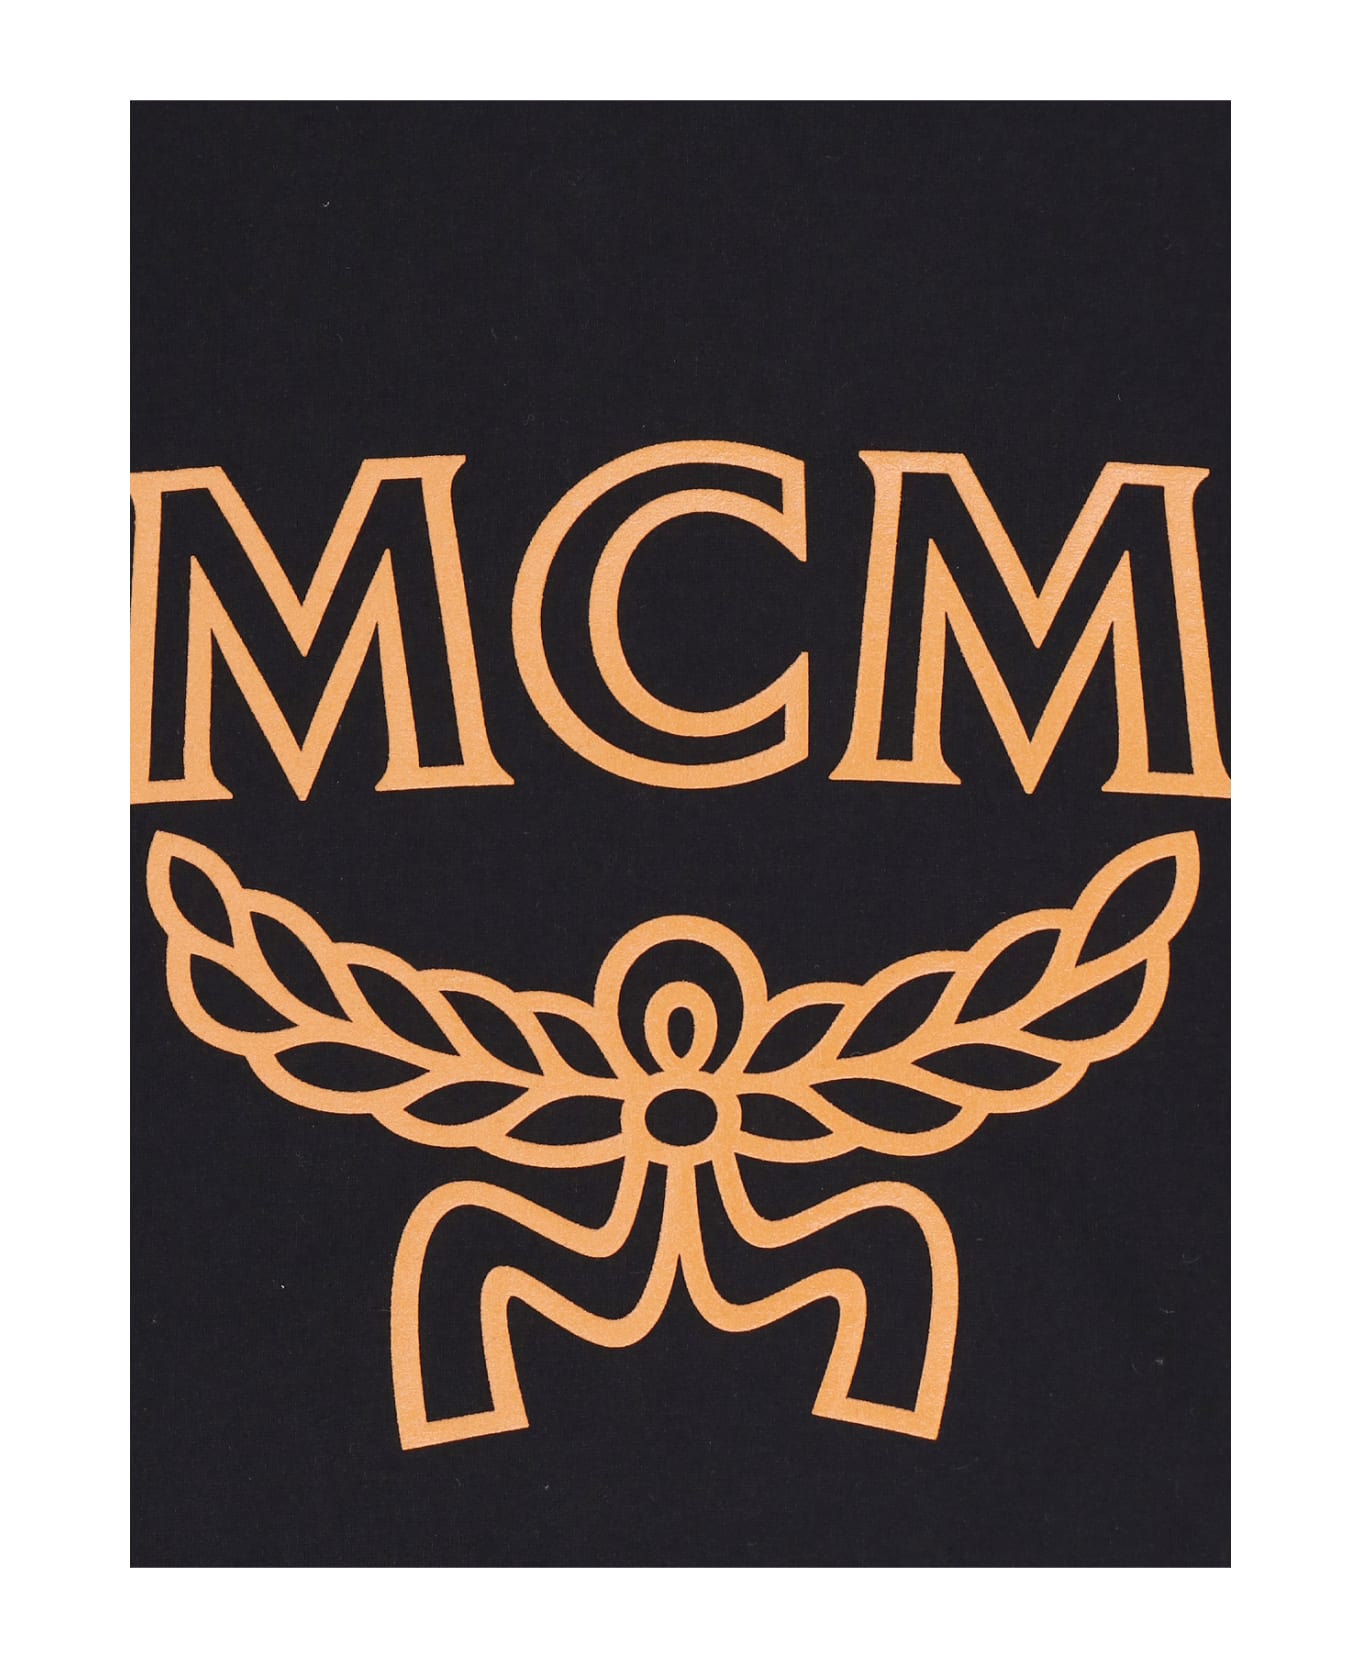 MCM Logo T-shirt - Black   Tシャツ